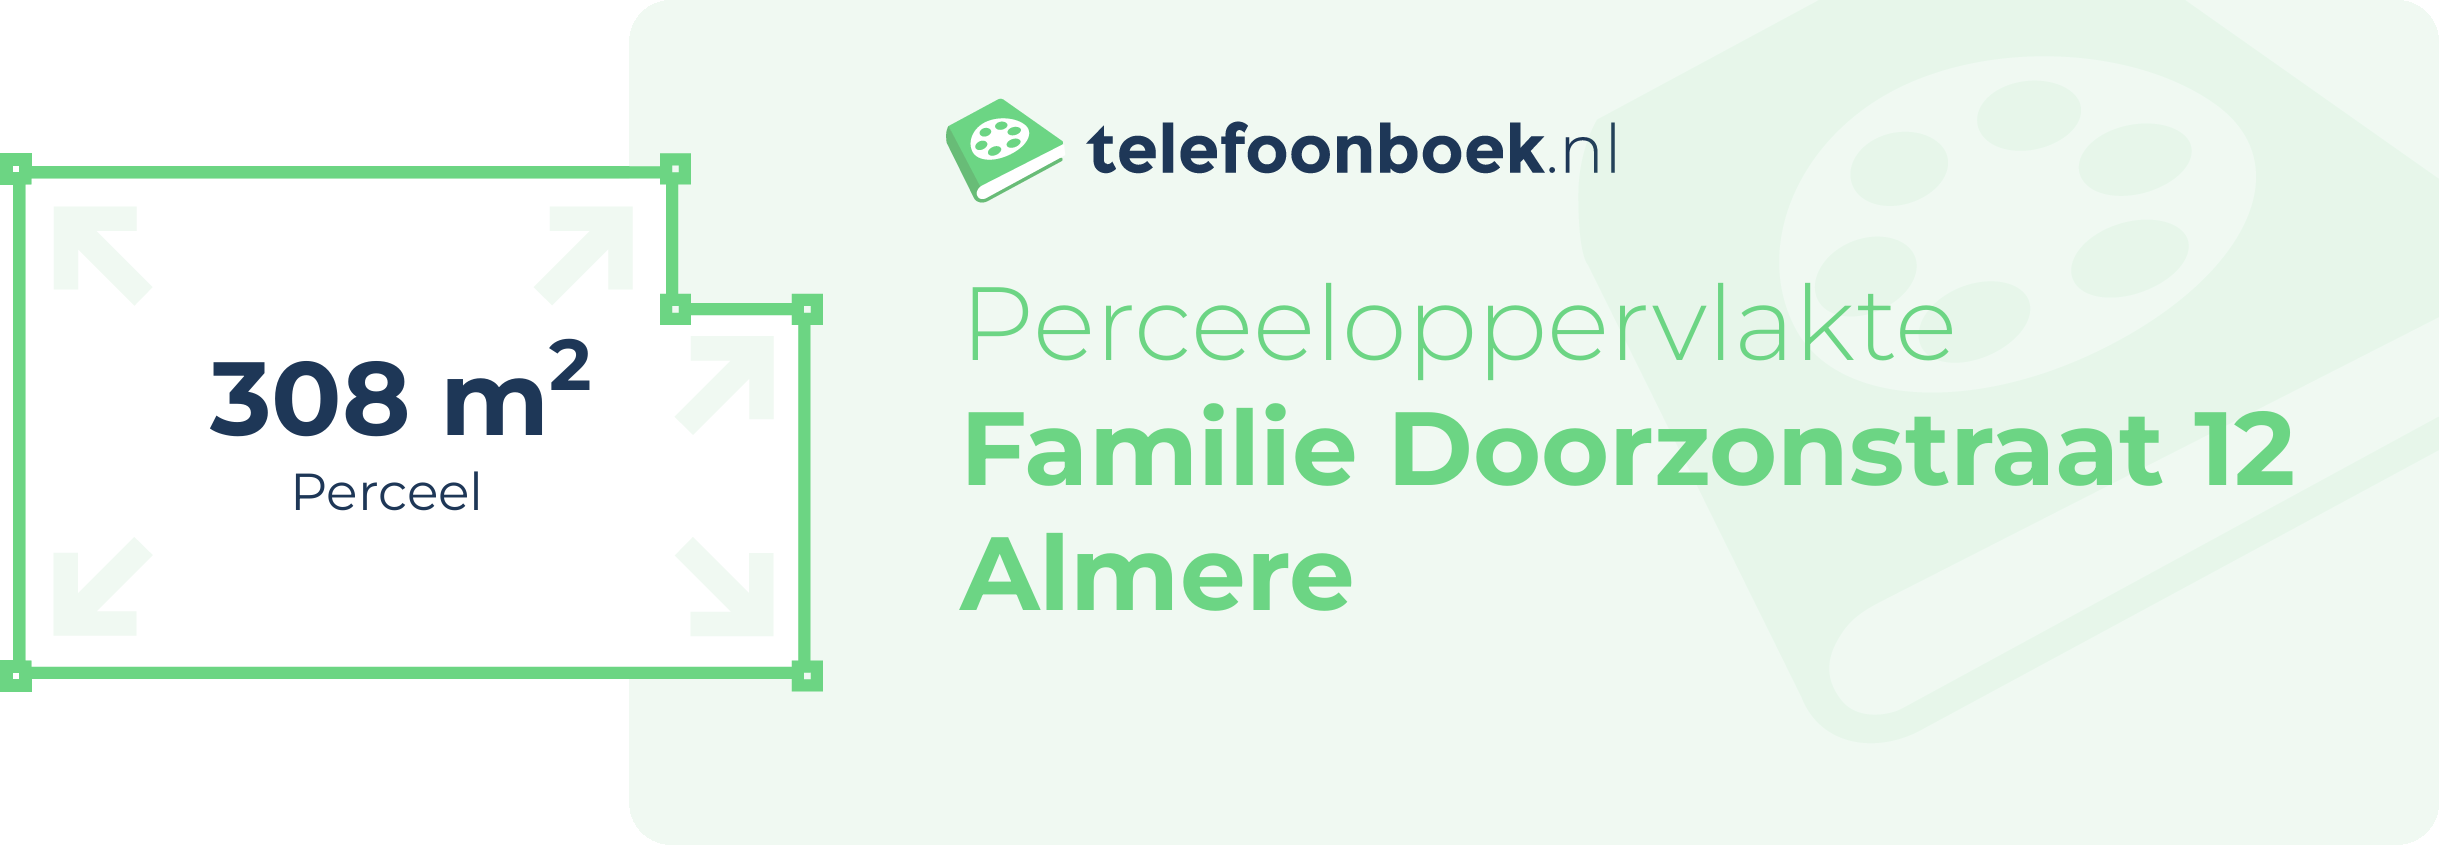 Perceeloppervlakte Familie Doorzonstraat 12 Almere